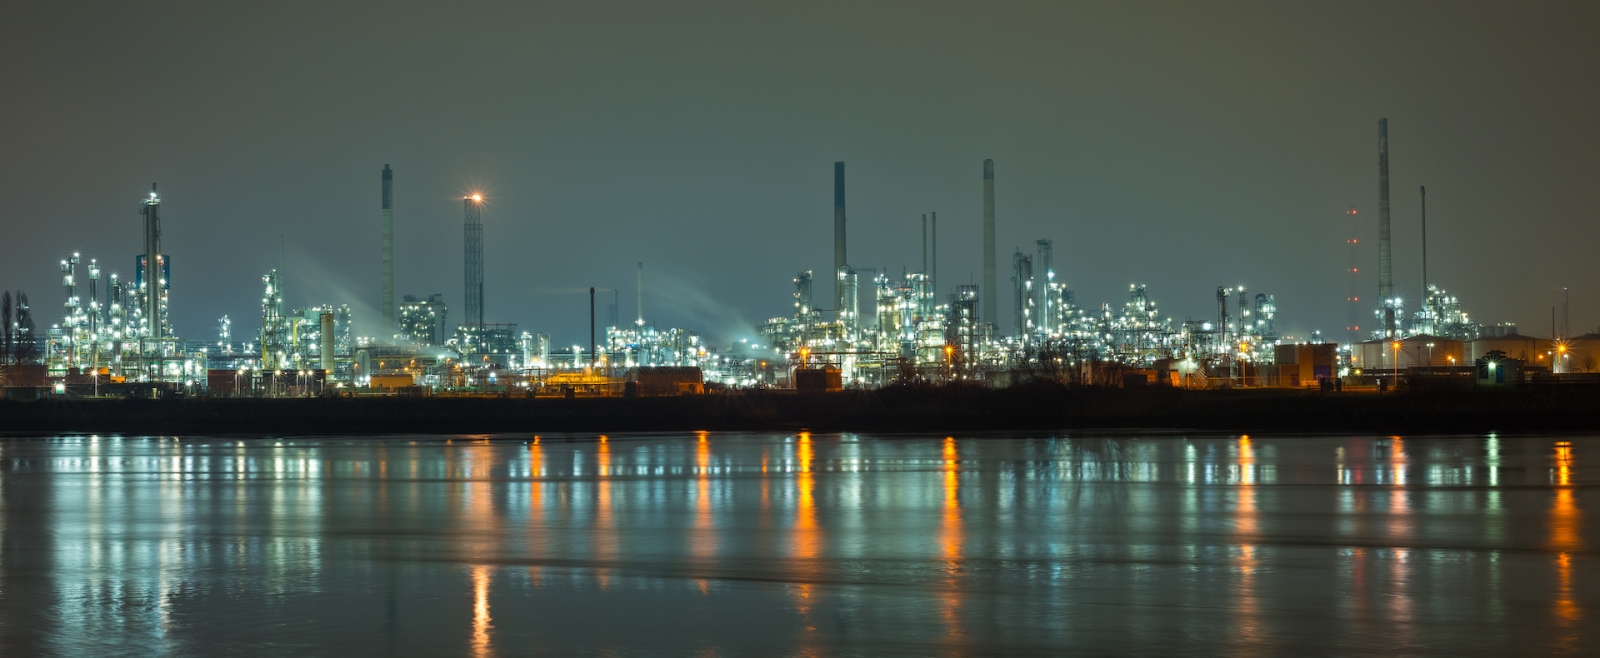 Panorama de la industria petroquímica en Rotterdam, Países Bajos por la noche